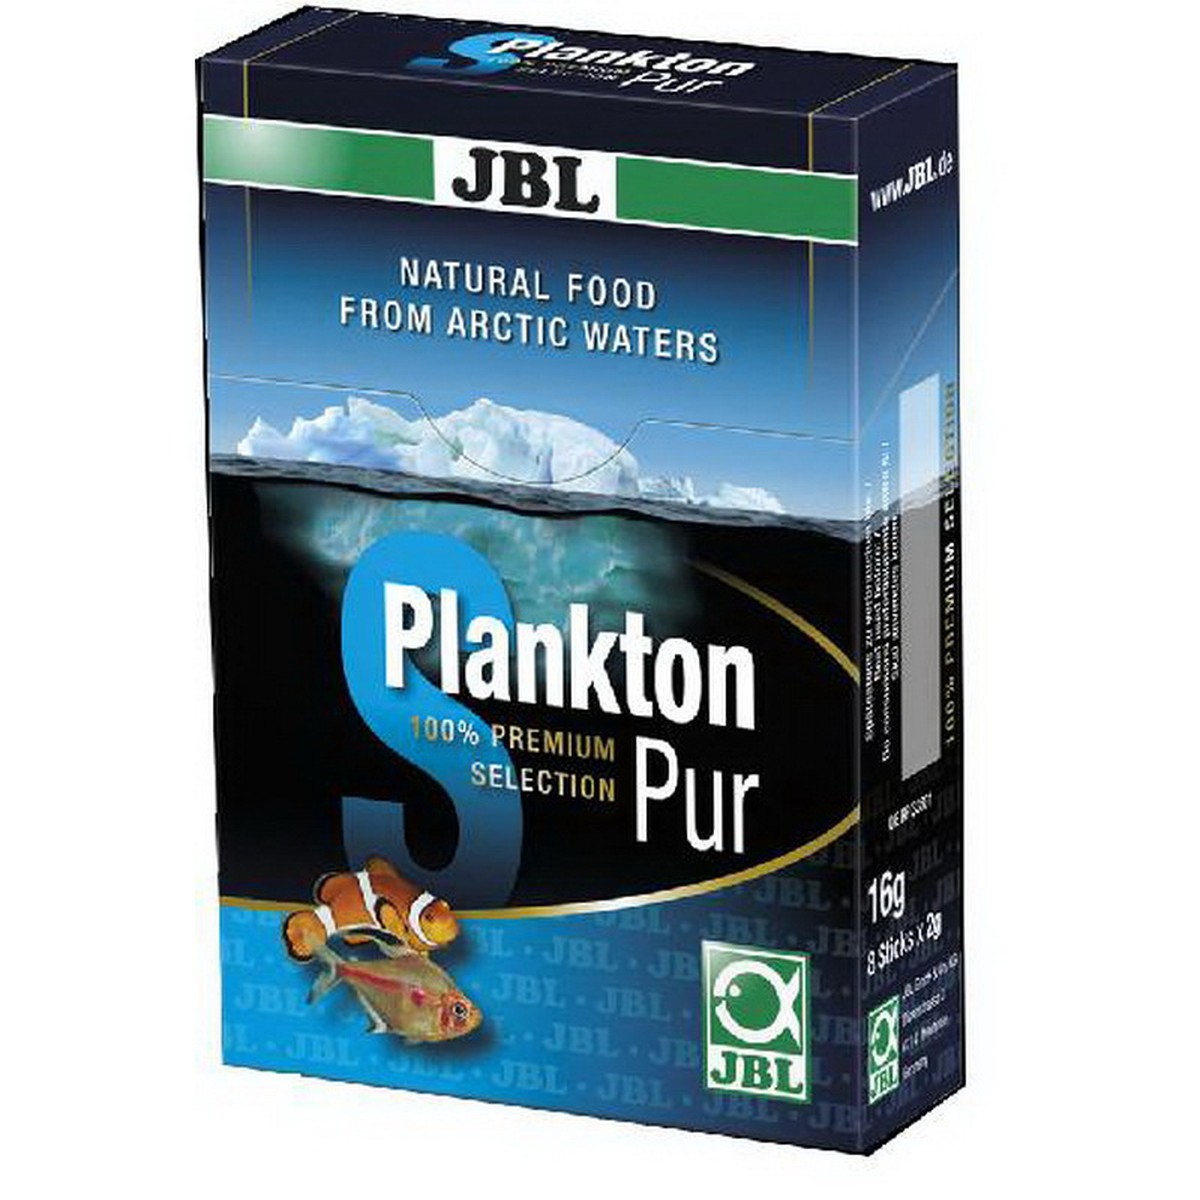   JBL Plankton pur S 8x5 grammes (40 grs)  40 gr (8x5gr)